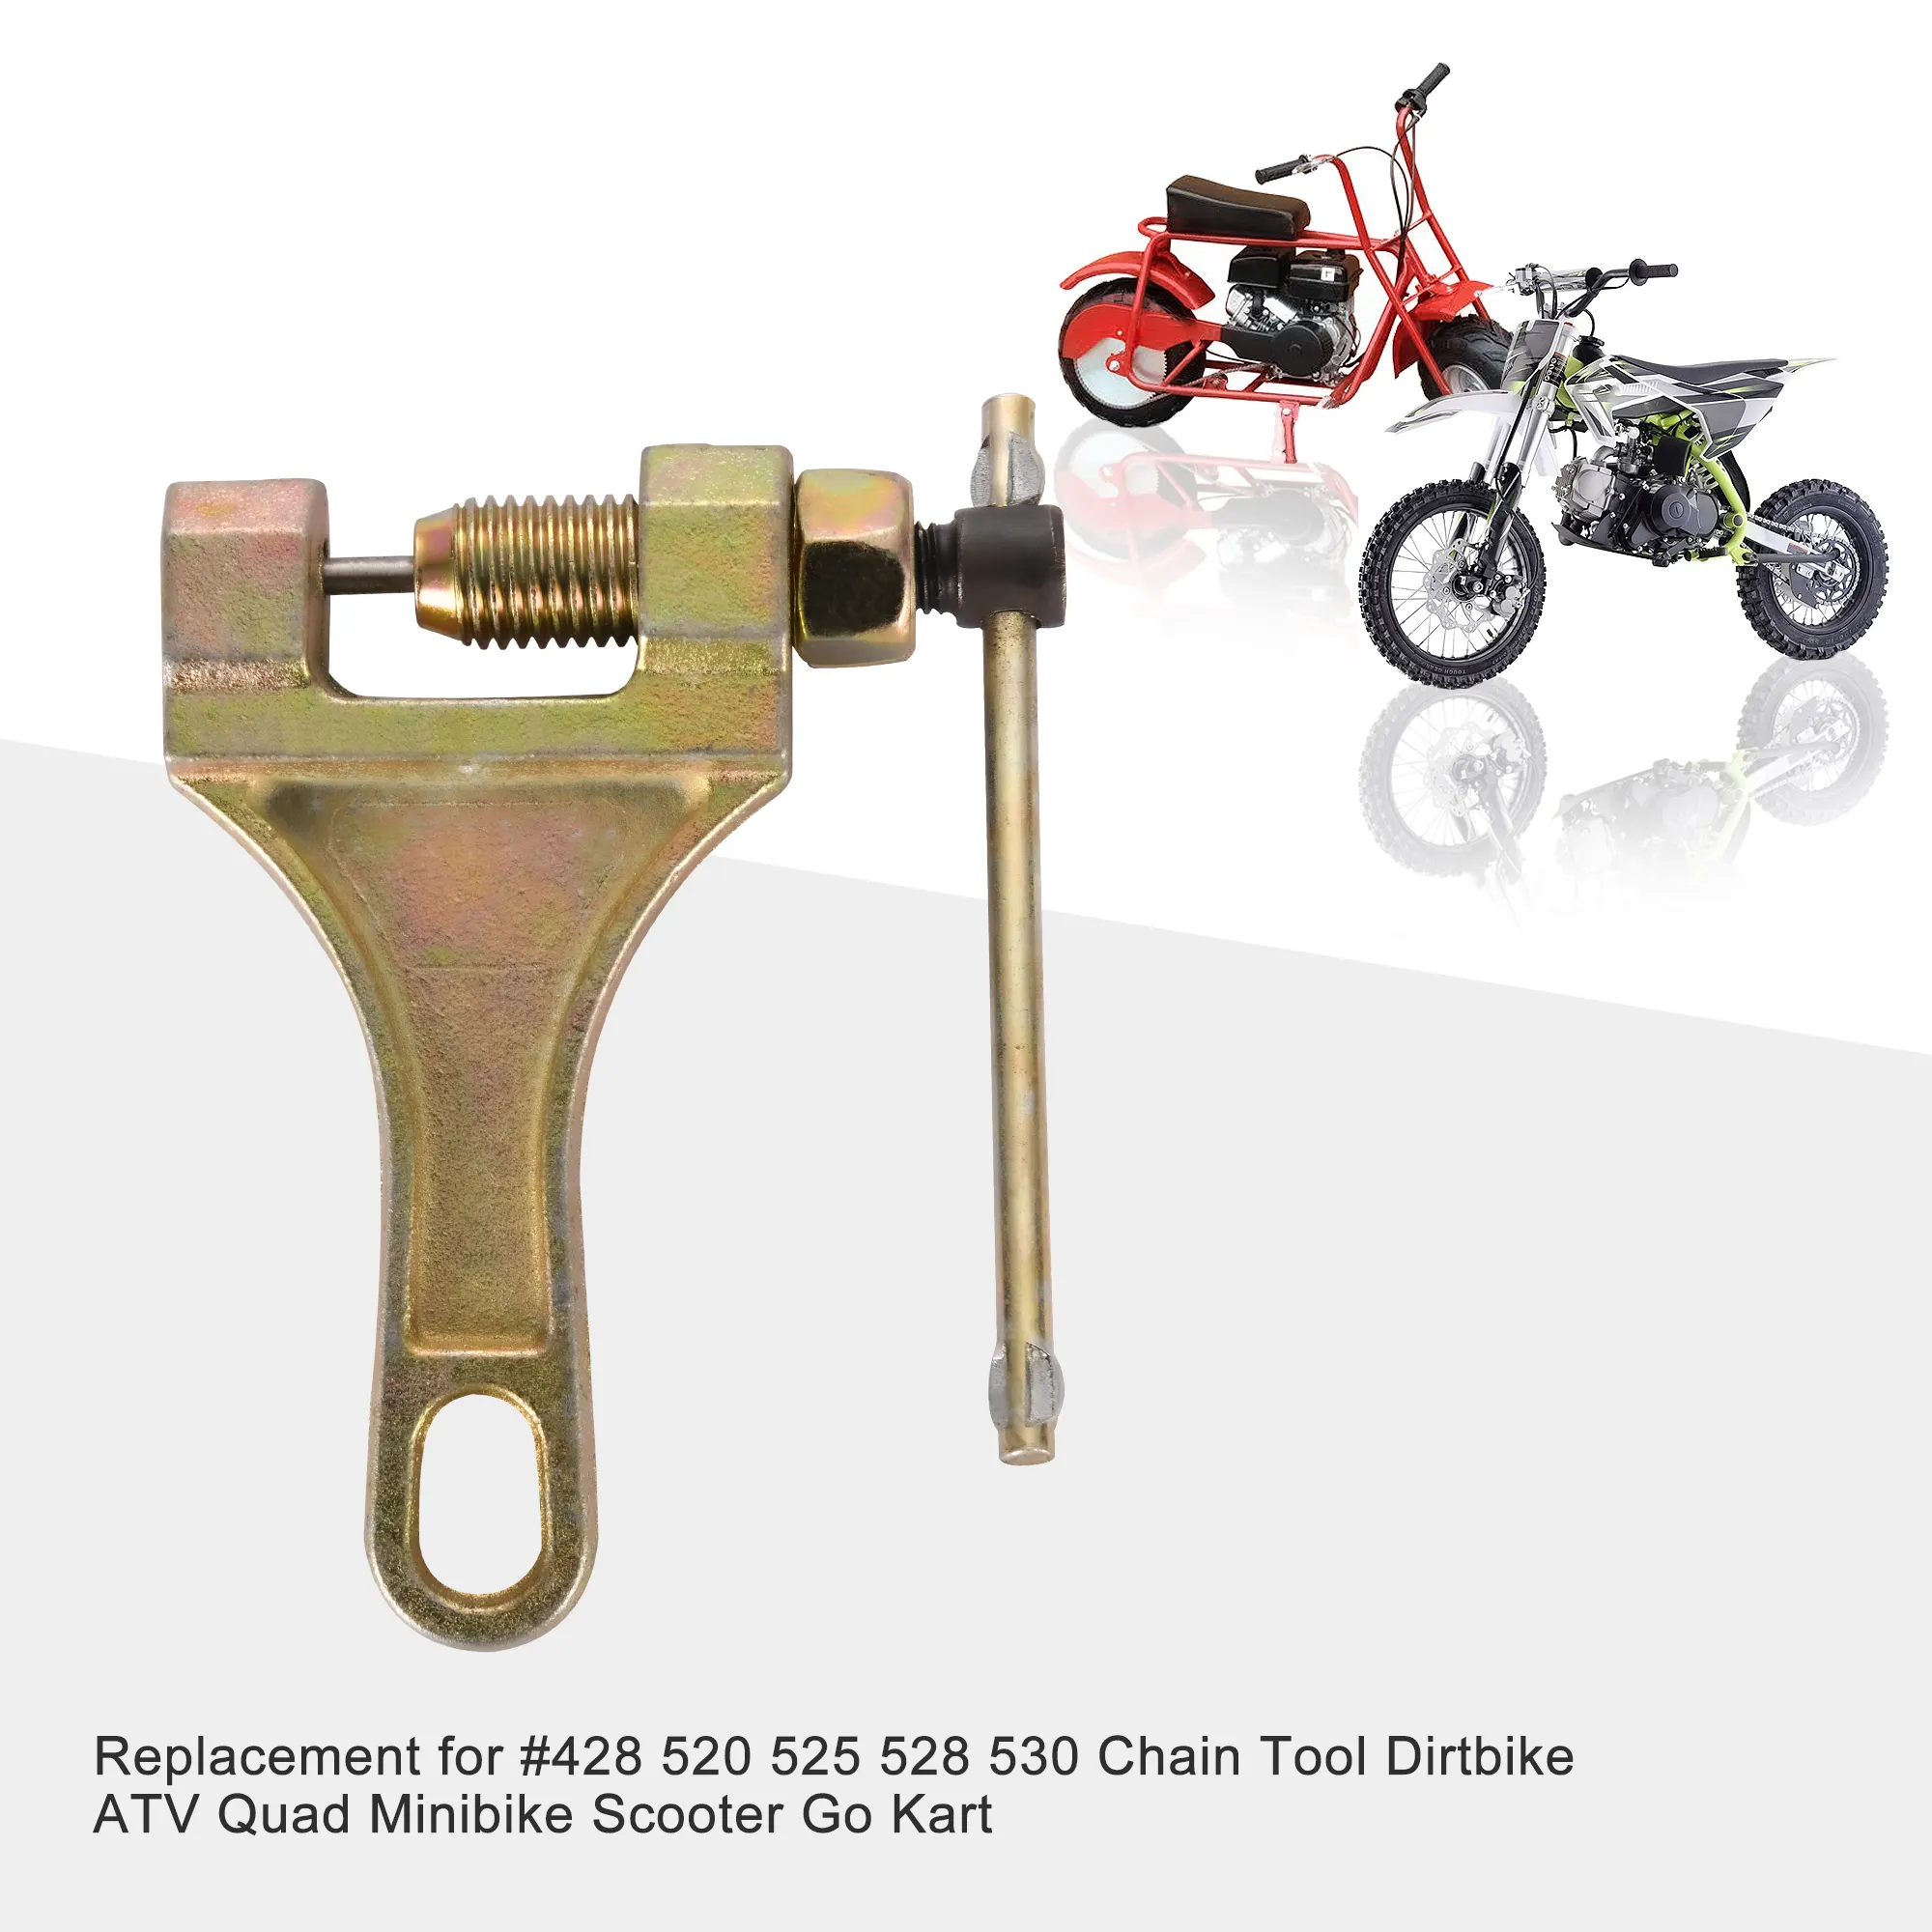 Goofit Chain Breaker Vervanging Voor #428 520 525 528 530 Keten Tool Motorfiets Dirt Bike Fiets Atv